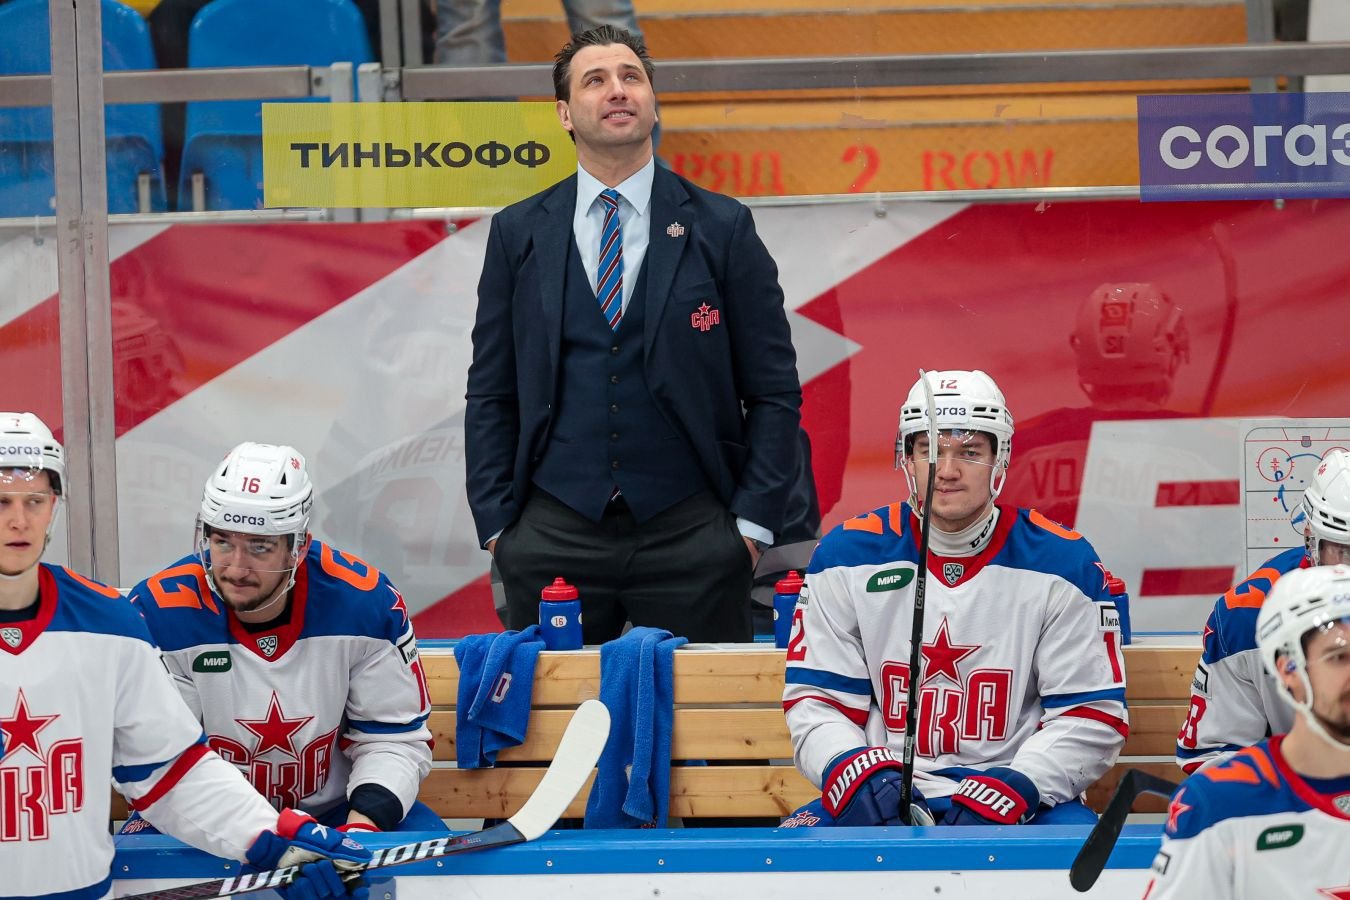 Ротенберг назвал встречу с Путиным самым важным событием СКА в сезоне